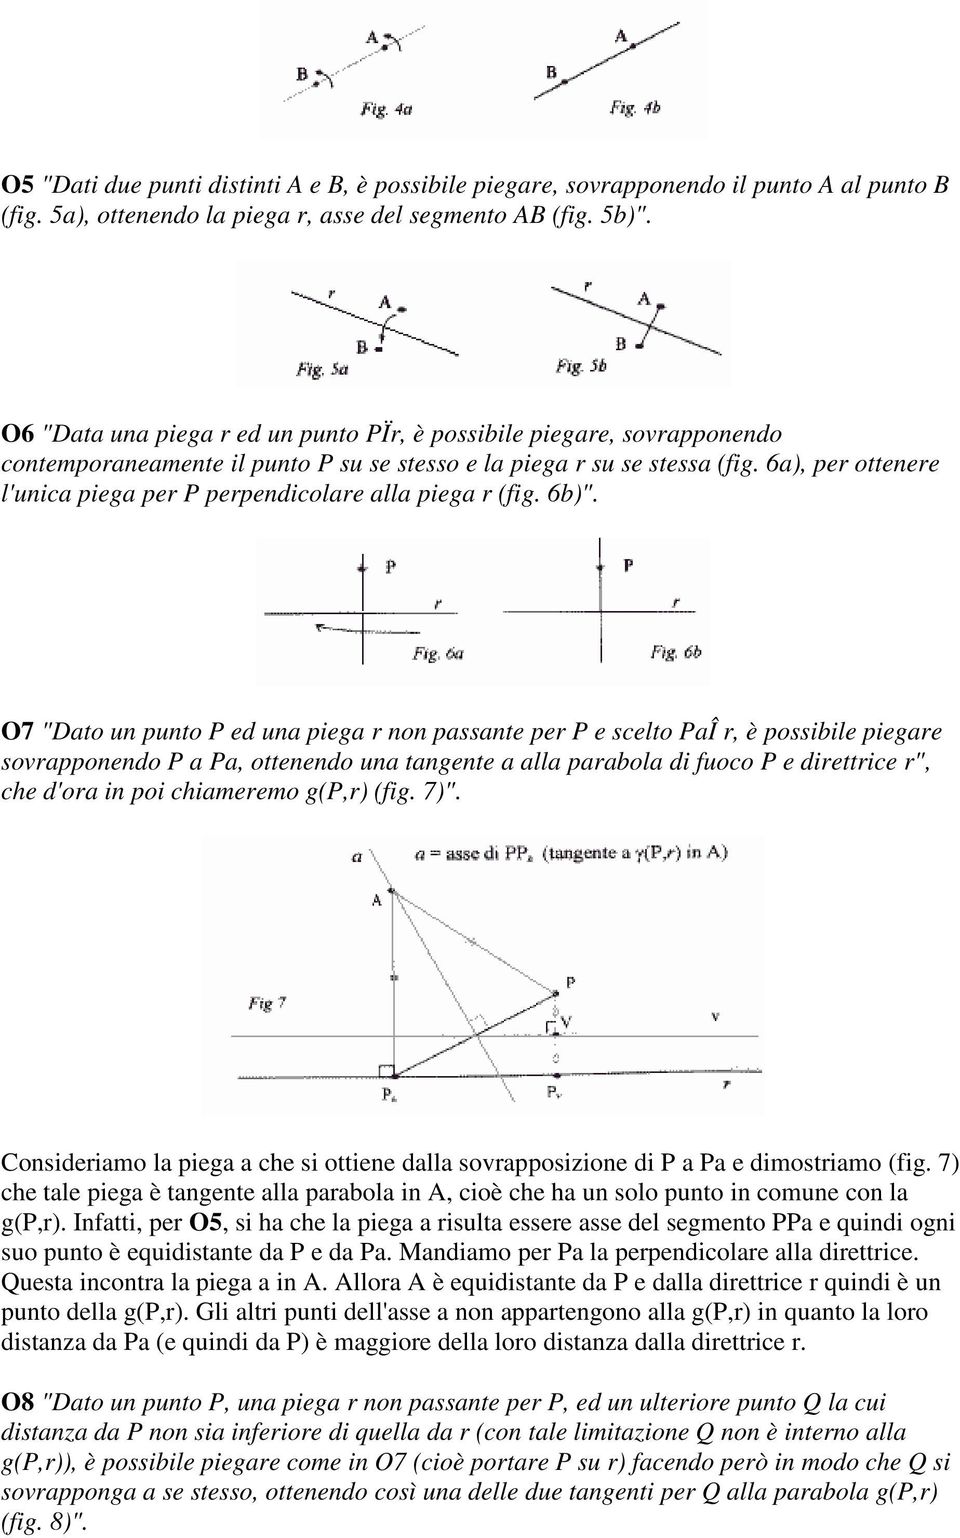 6a), per ottenere l'unica piega per P perpendicolare alla piega r (fig. 6b)".